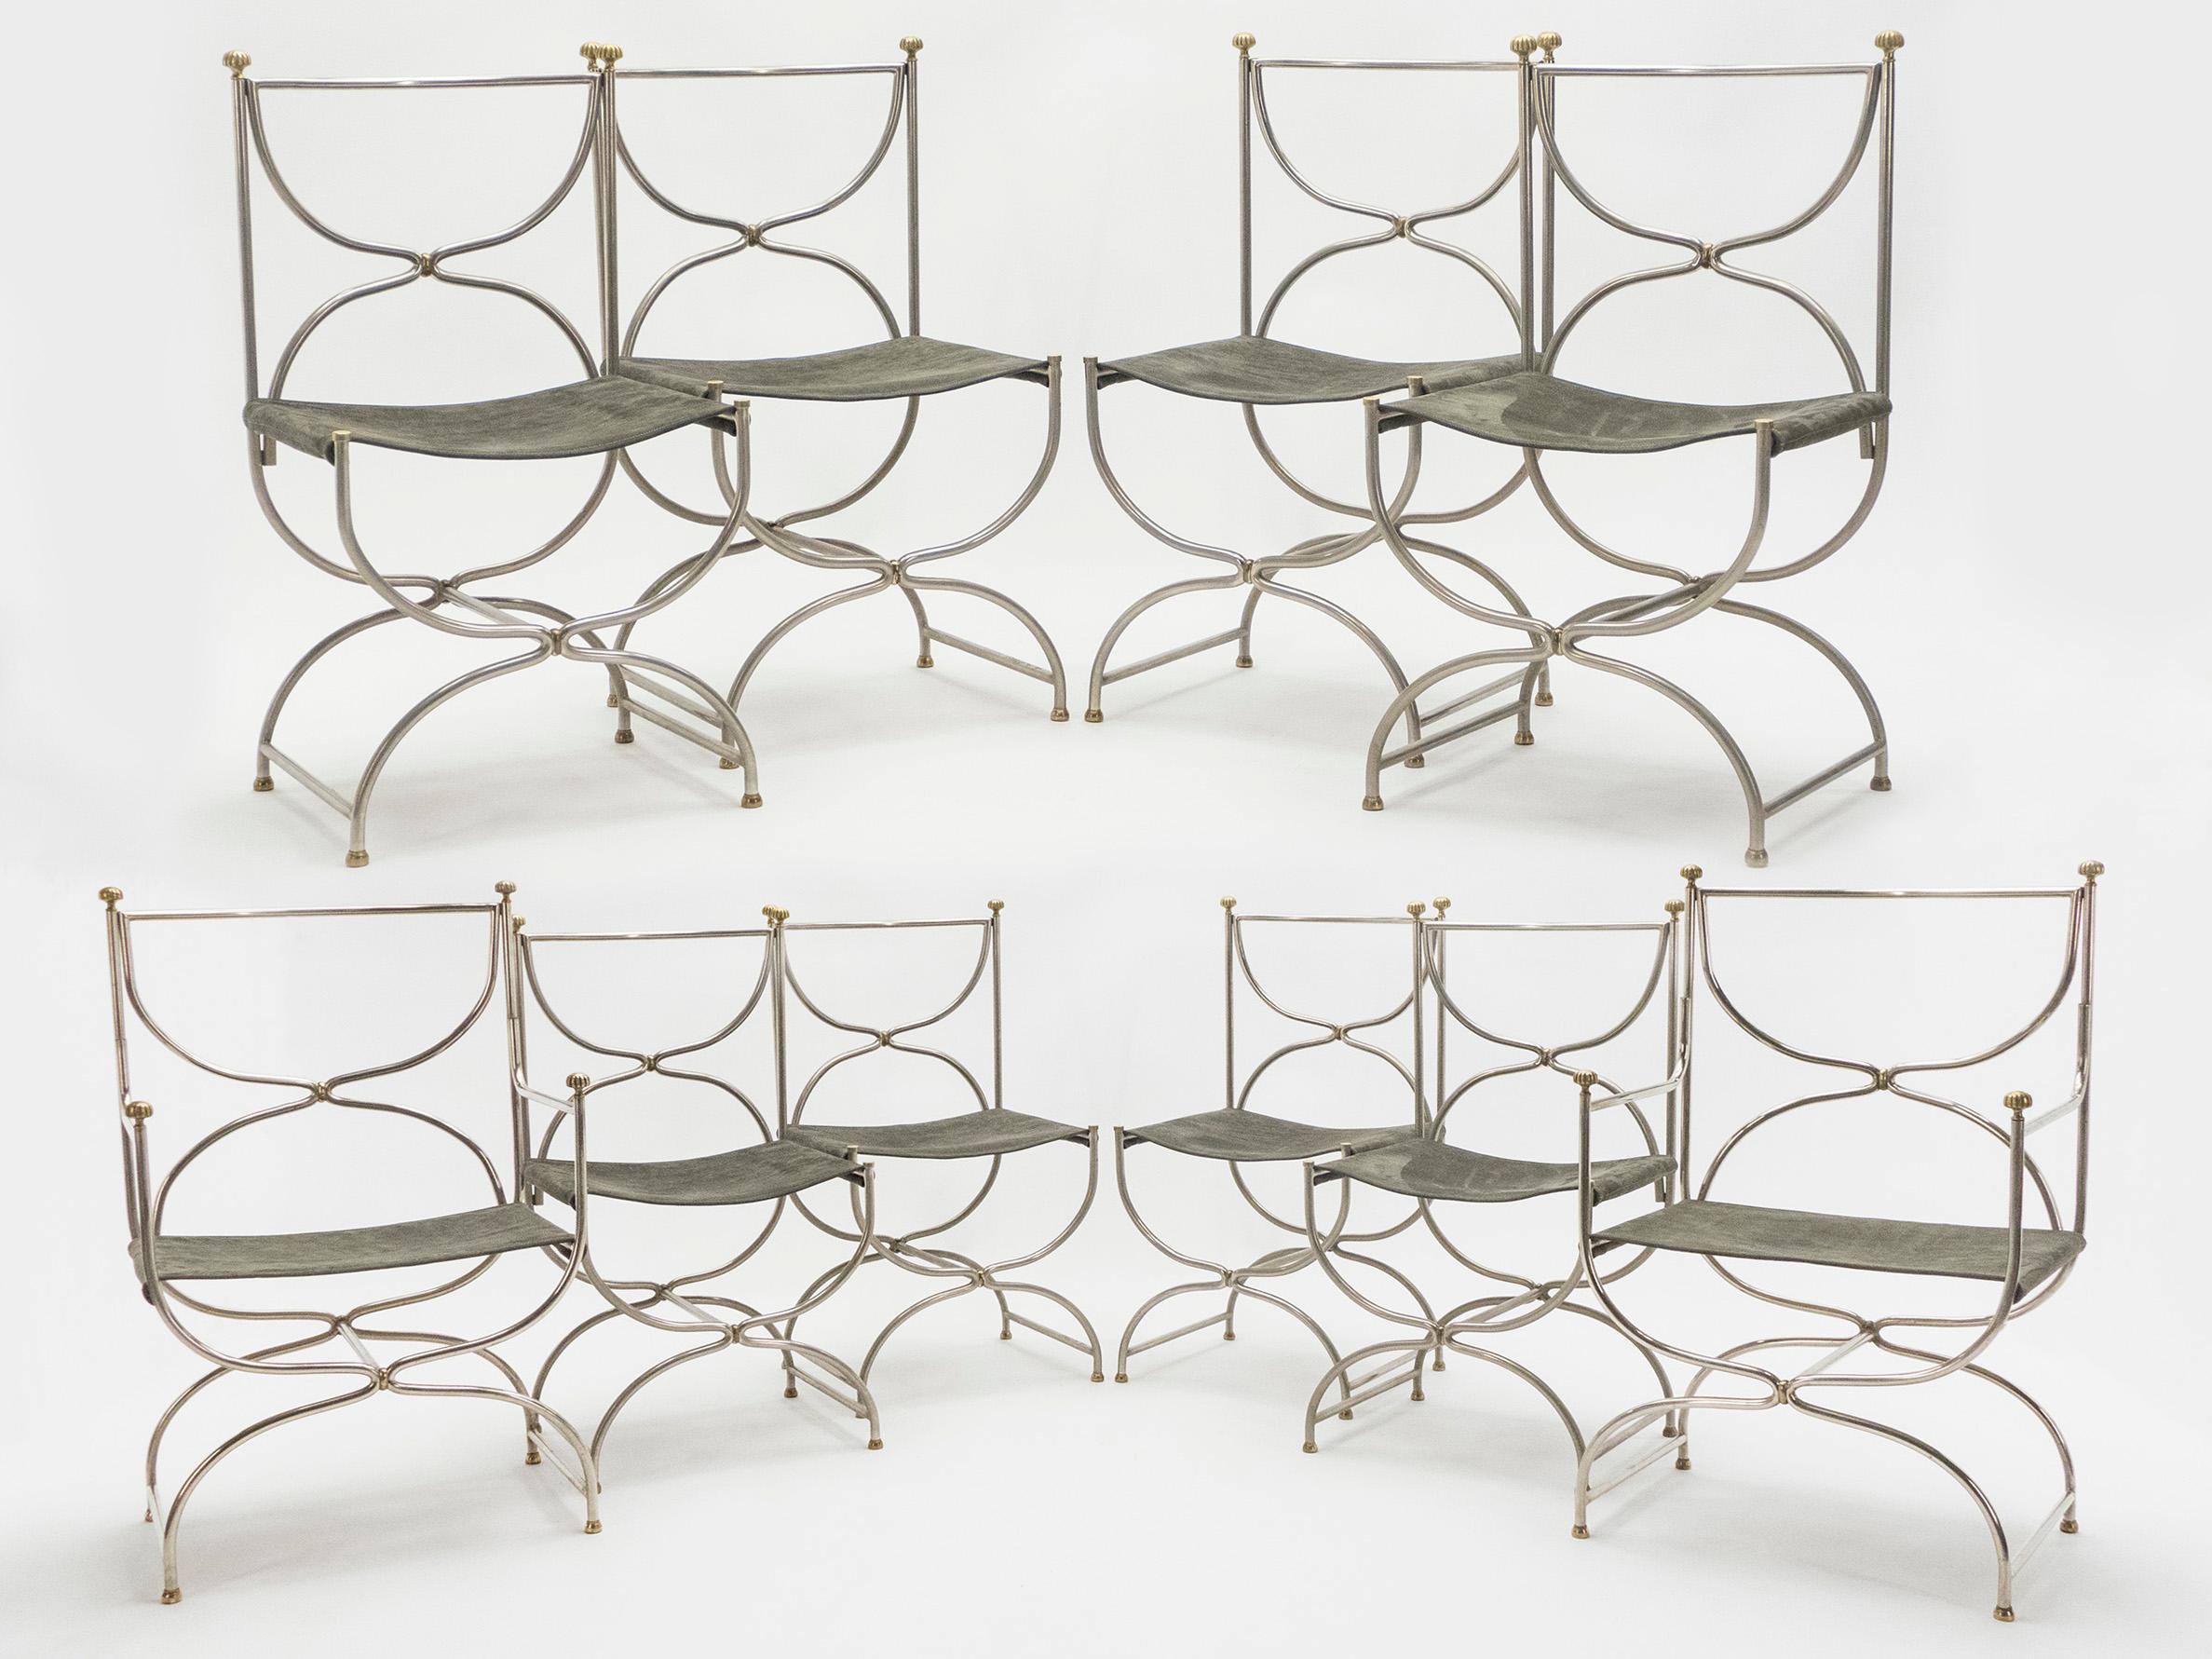 Seltener Satz von zehn Stahl-Messing-Lederstühlen aus der Mitte des Jahrhunderts Maison Jansen, 1960er Jahre (Moderne der Mitte des Jahrhunderts)